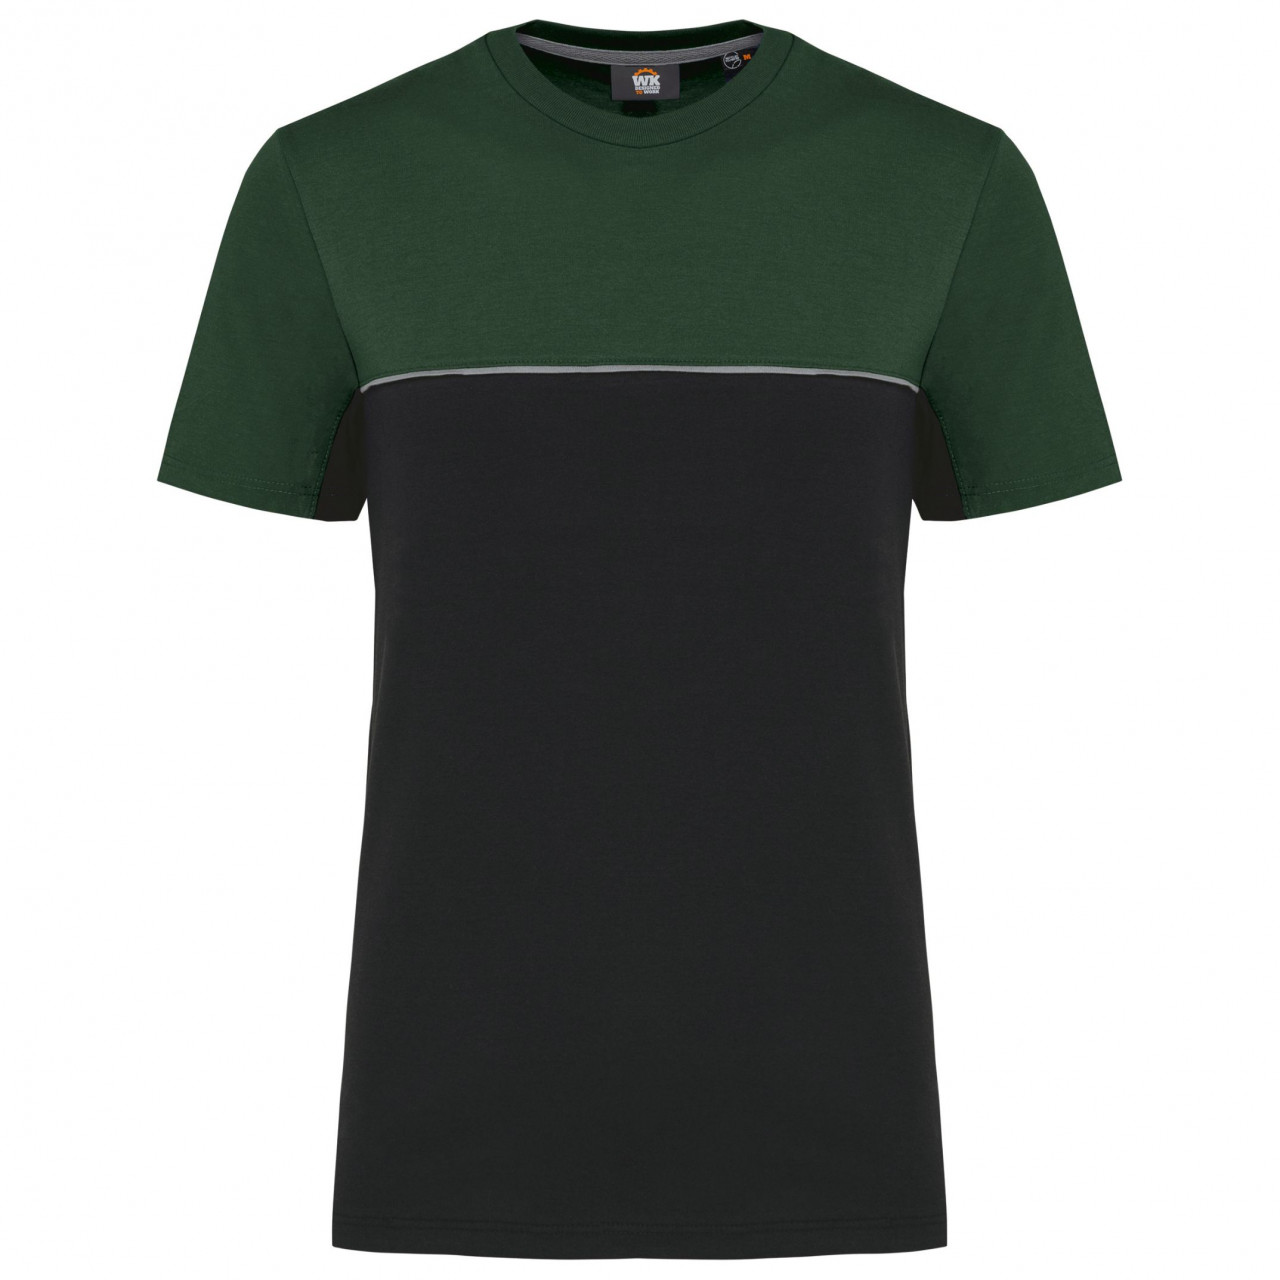 Pracovní triko dvoubarevné WK - černé-zelené, 4XL